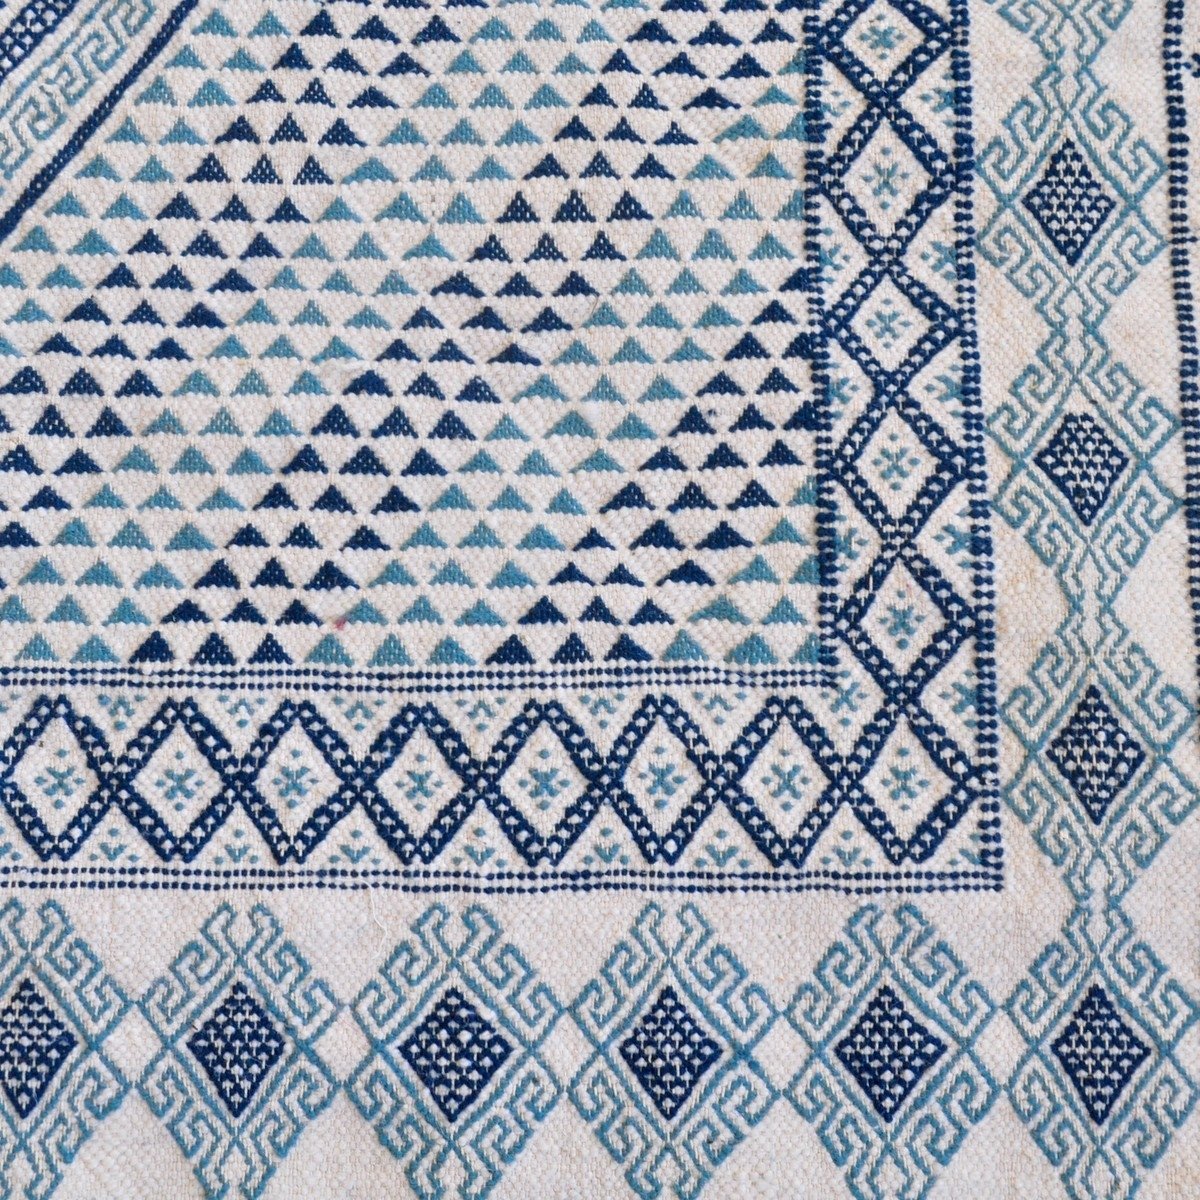 Berber tapijt Groot Tapijt Margoum Al Kasaba 170x240 Blauw/Wit (Handgeweven, Wol, Tunesië) Tunesisch Margoum Tapijt uit de stad 